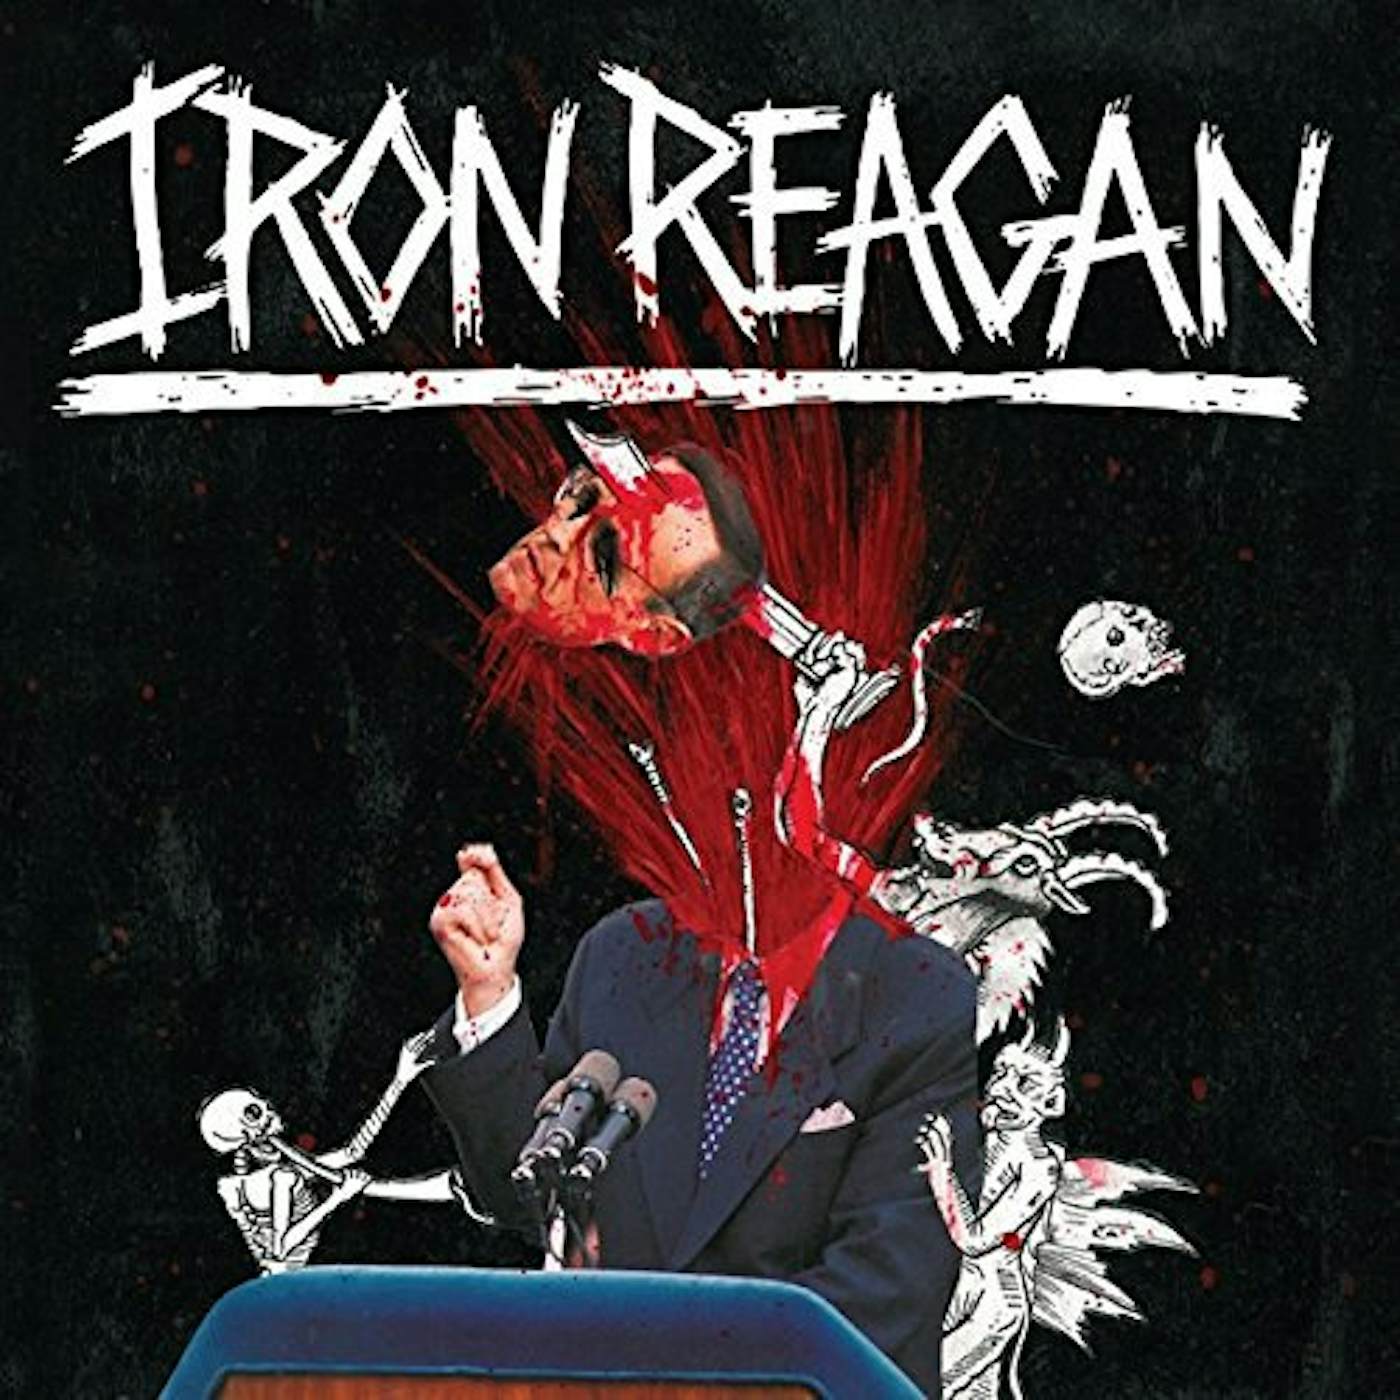 Iron Reagan TYRANNY OF WILL CD